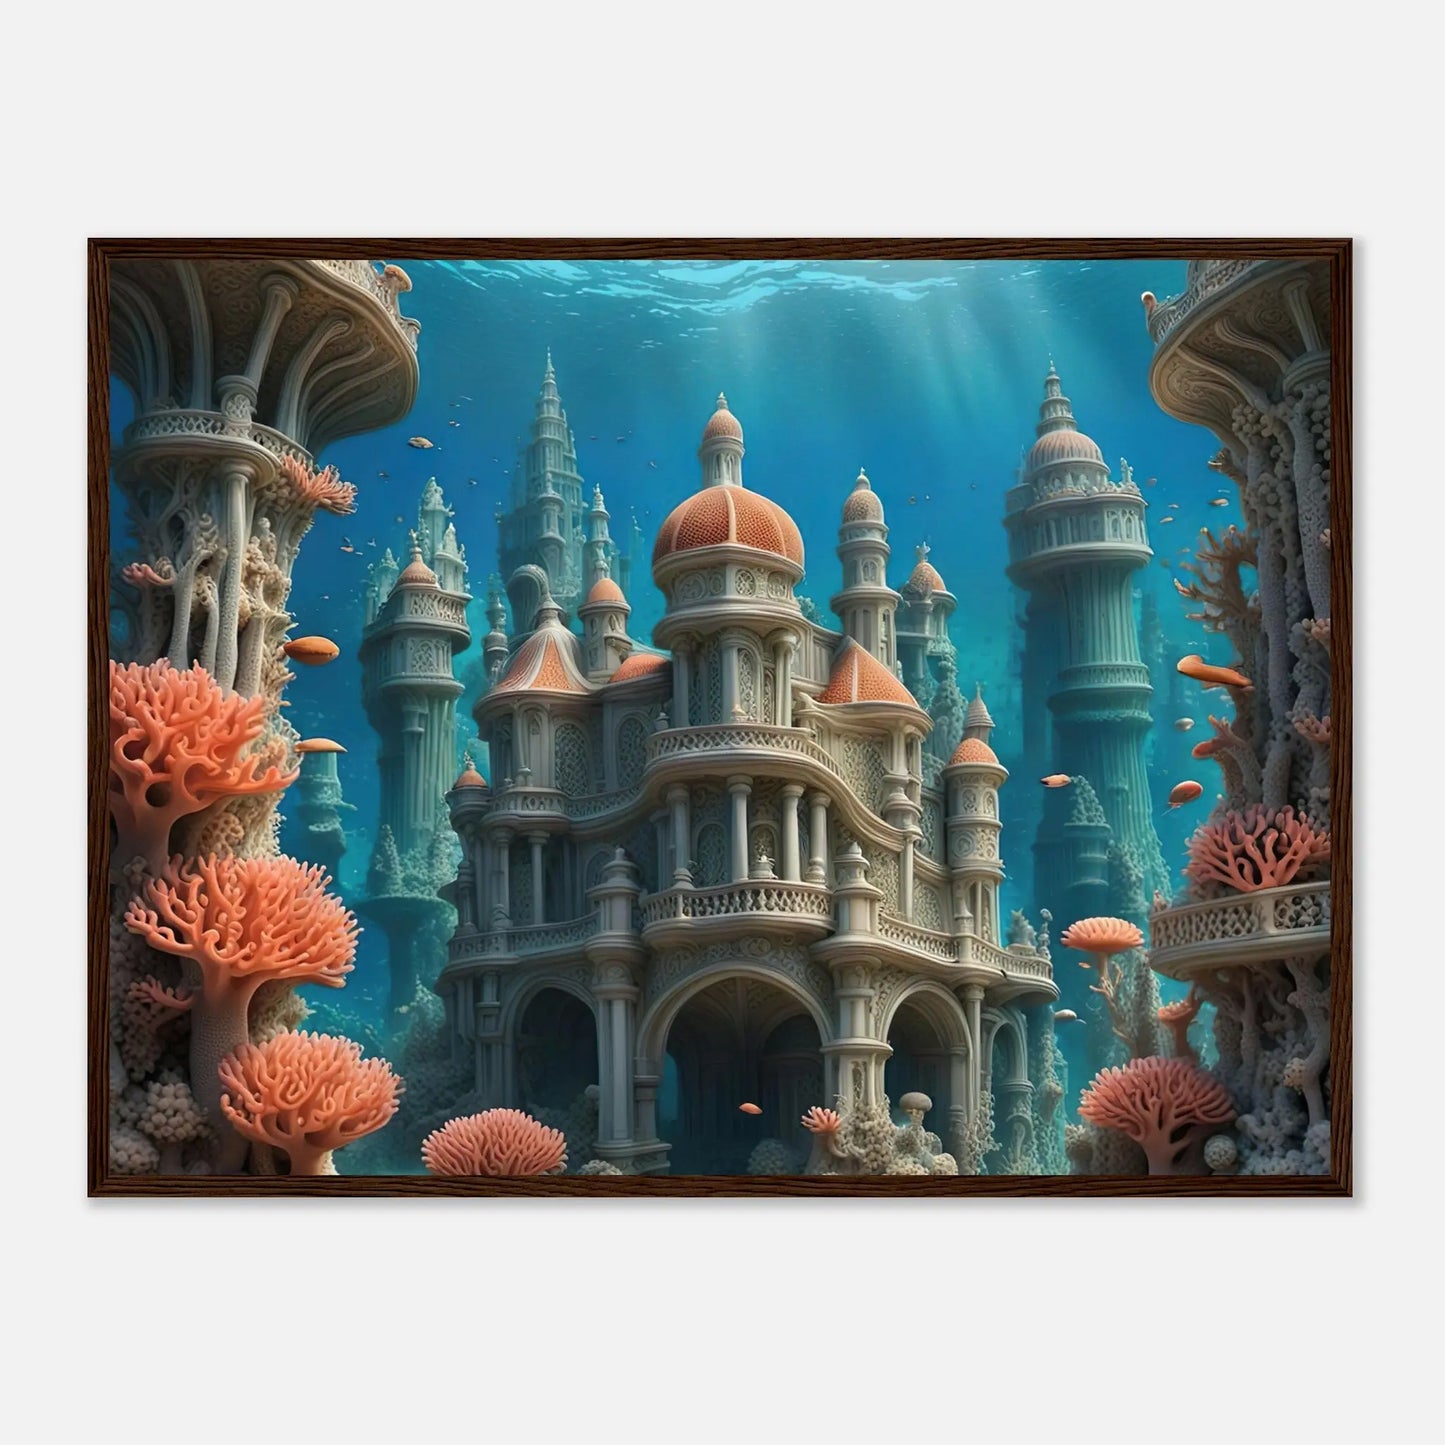 Gerahmtes Premium-Poster - Unterwasserwelt - Digitaler Stil, KI-Kunst - RolConArt, Unterwasserlandschaften, 60x80-cm-24x32-Dunkler-Holzrahmen